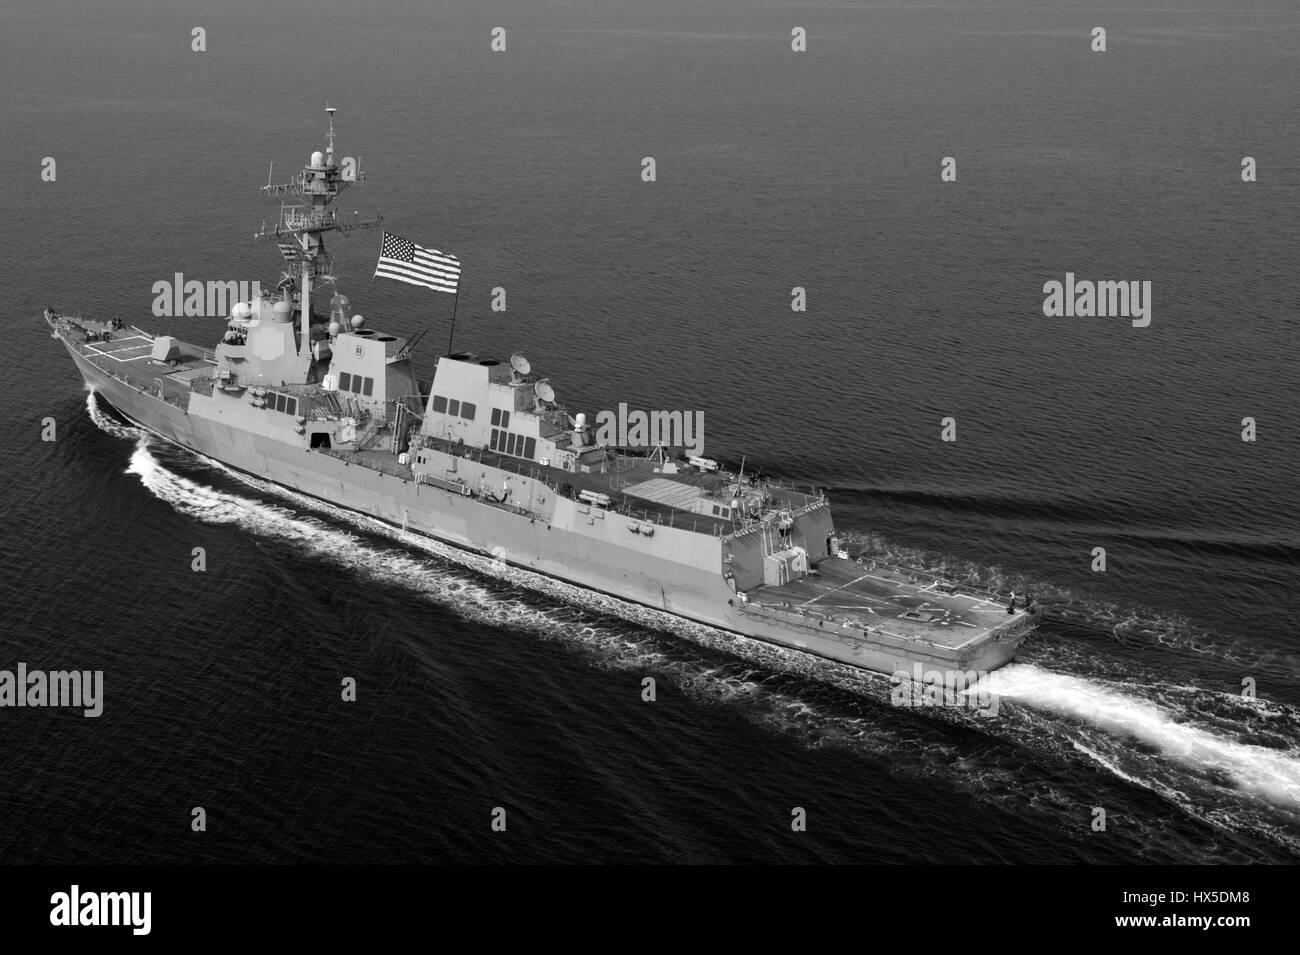 Geführte Flugkörper Zerstörer USS Jason Dunham (DDG-109) auf dem Wasser in den USA 5. Flotte Aufgabengebiet, 2013. Bild mit freundlicher Genehmigung Deven B. King / US Navy. Stockfoto